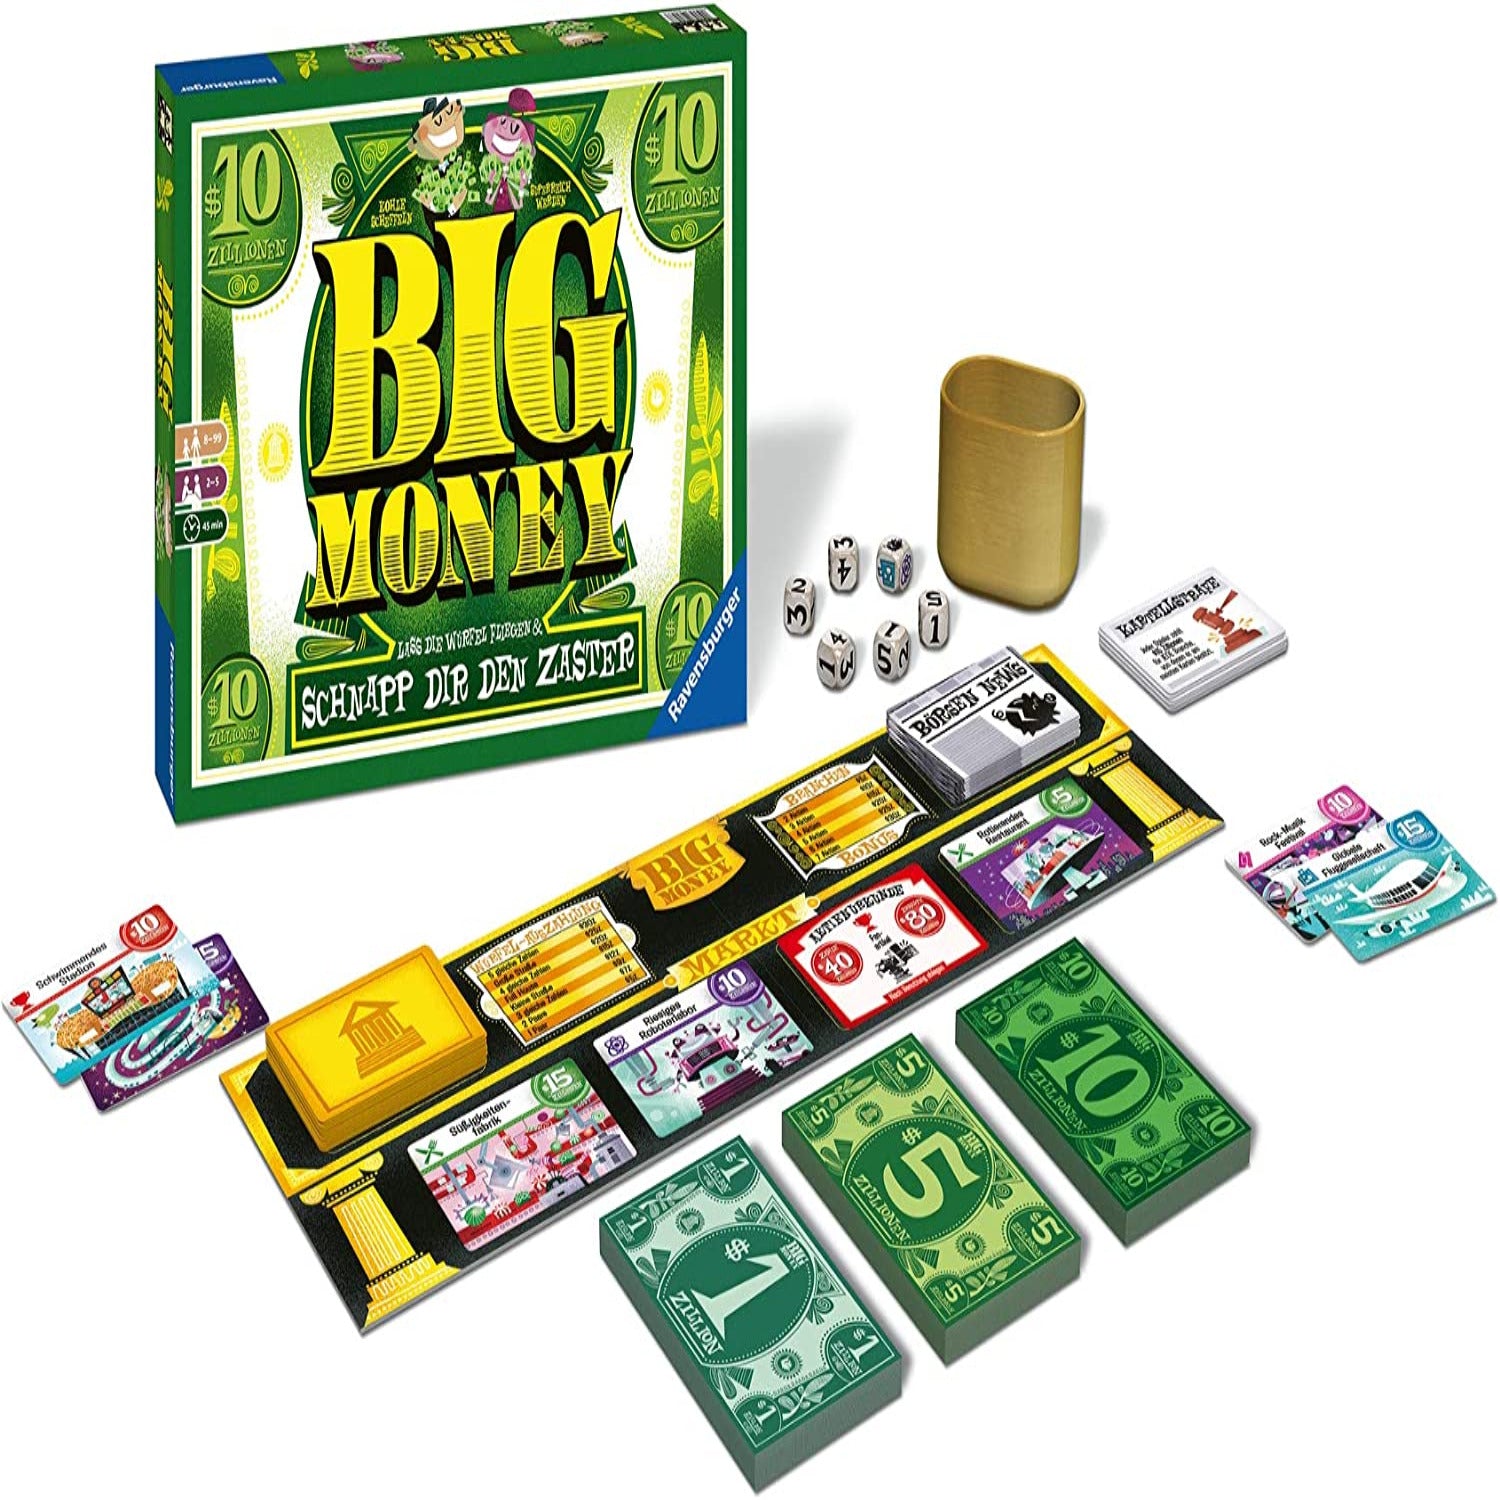 Big Money Ravensburger Würfelspiel Brettspiel  GASCHer's Spielwarenshop   